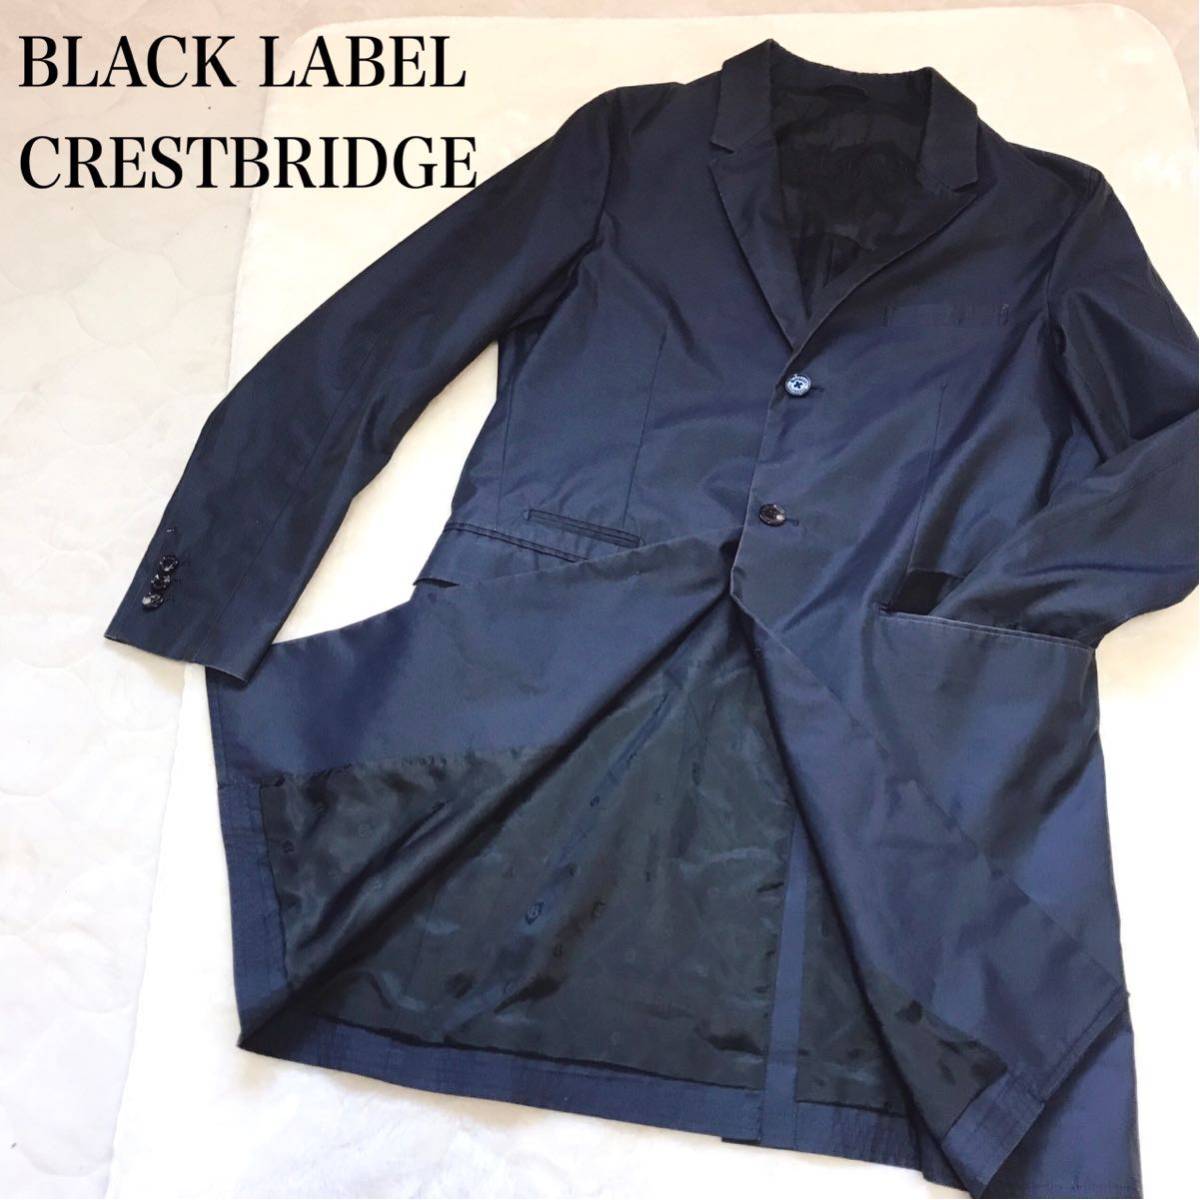 BLACK LABEL CRESTBRIDGE ブラックレーベルクレストブリッジ Bロゴ柄 チェスターコート トレンチコート ロングコート ジャケット メンズ